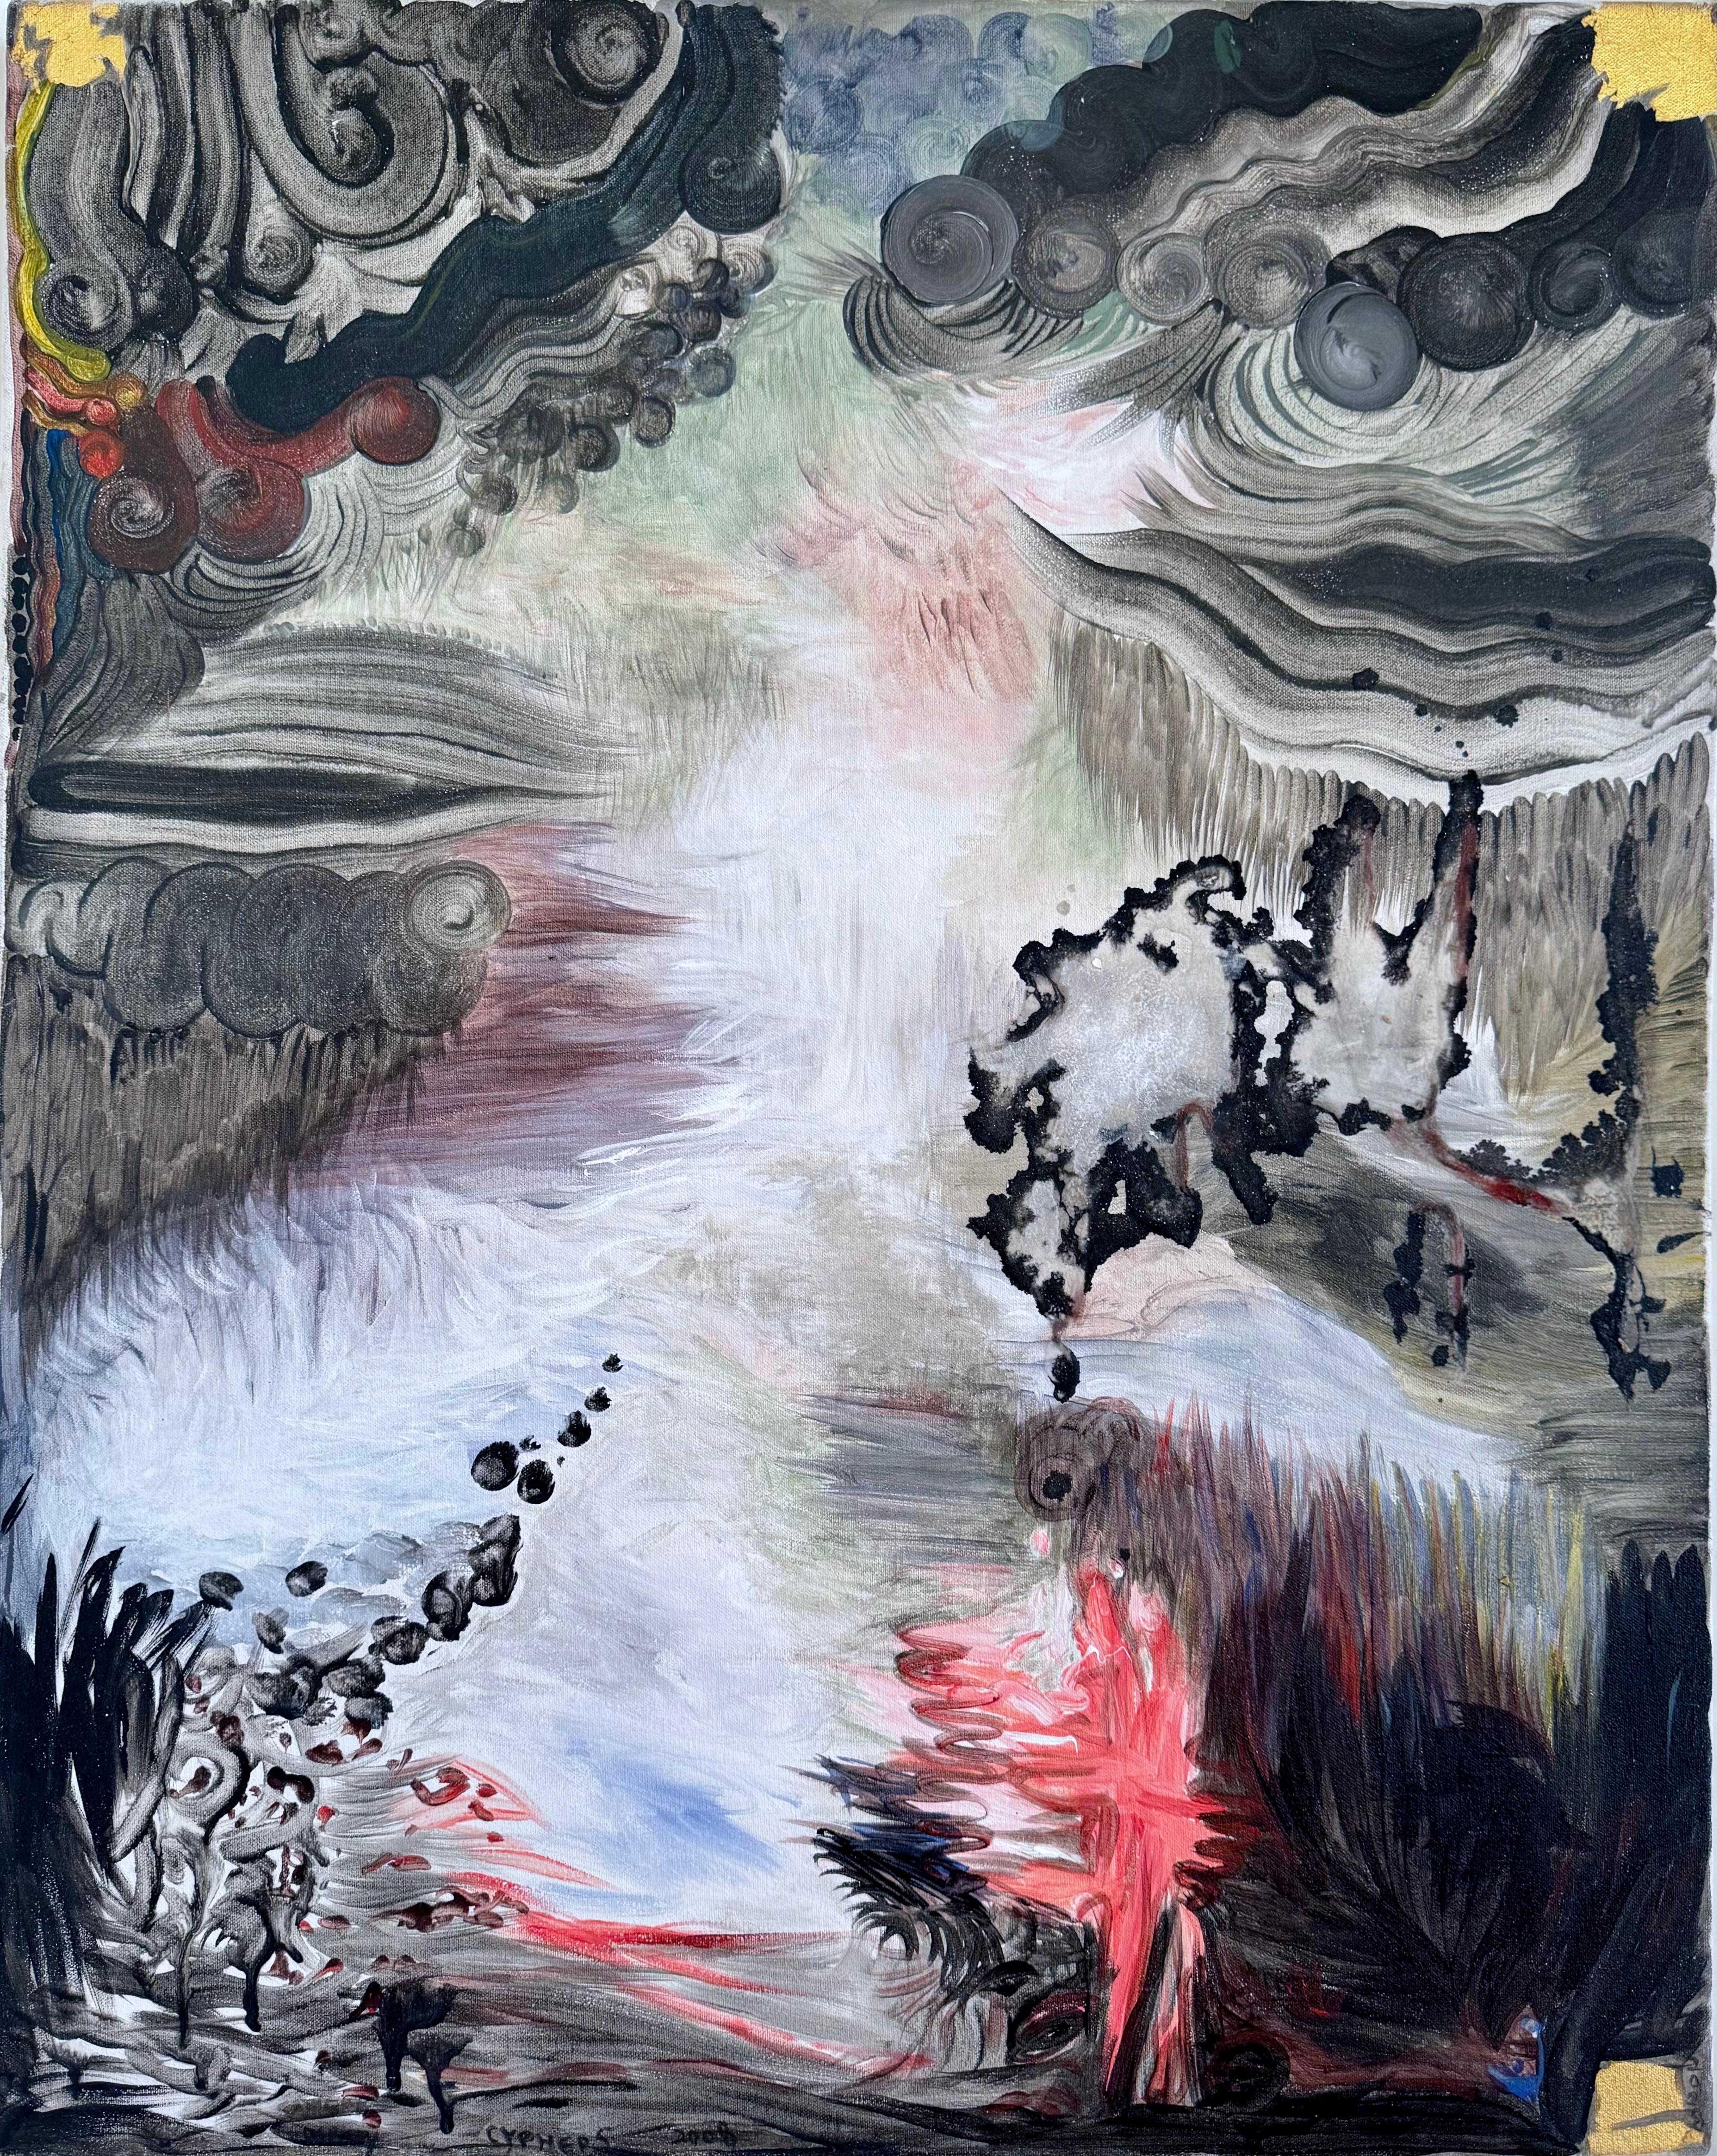 Peggy Cyphers Landscape Painting – "Ochsenfroschteich" Abstrakte Landschaftsmalerei in rot, schwarz, blau, braun, grau